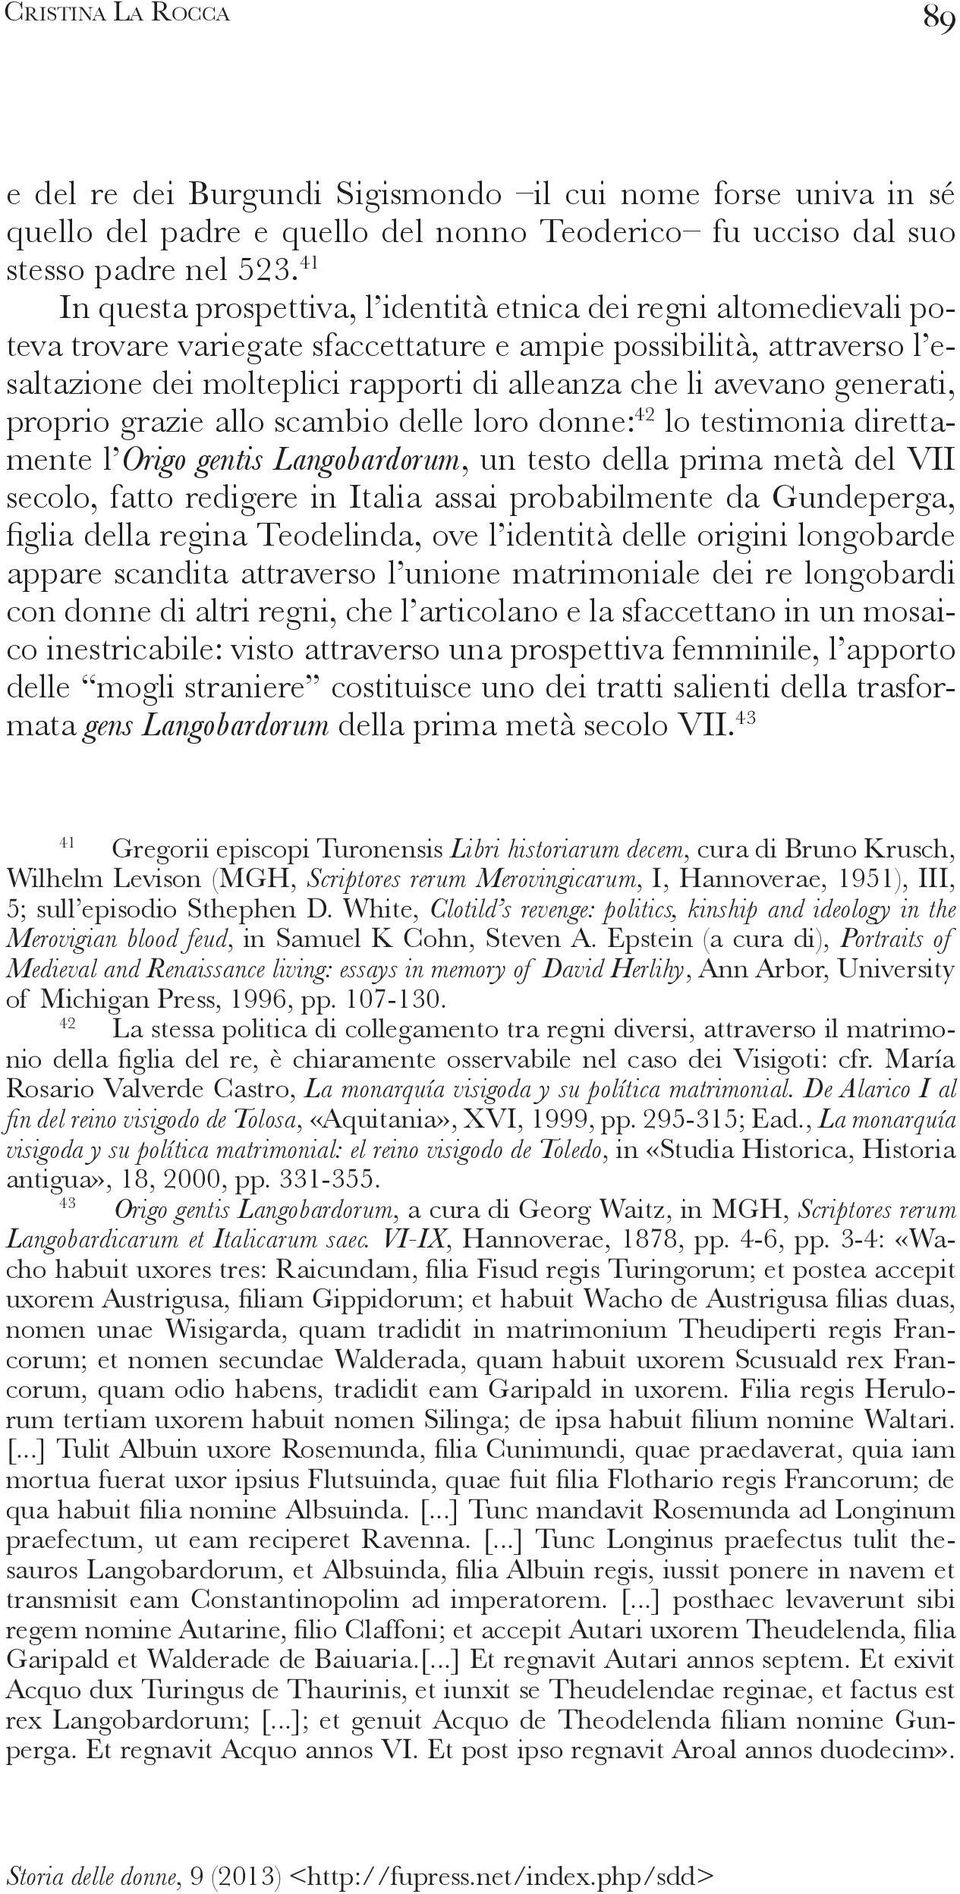 in Italia assai probabilmente da Gundeperga, - delle mogli straniere costituisce uno dei tratti salienti della trasformata gens Langobardorum 43 41 Gregorii episcopi Turonensis Libri historiarum